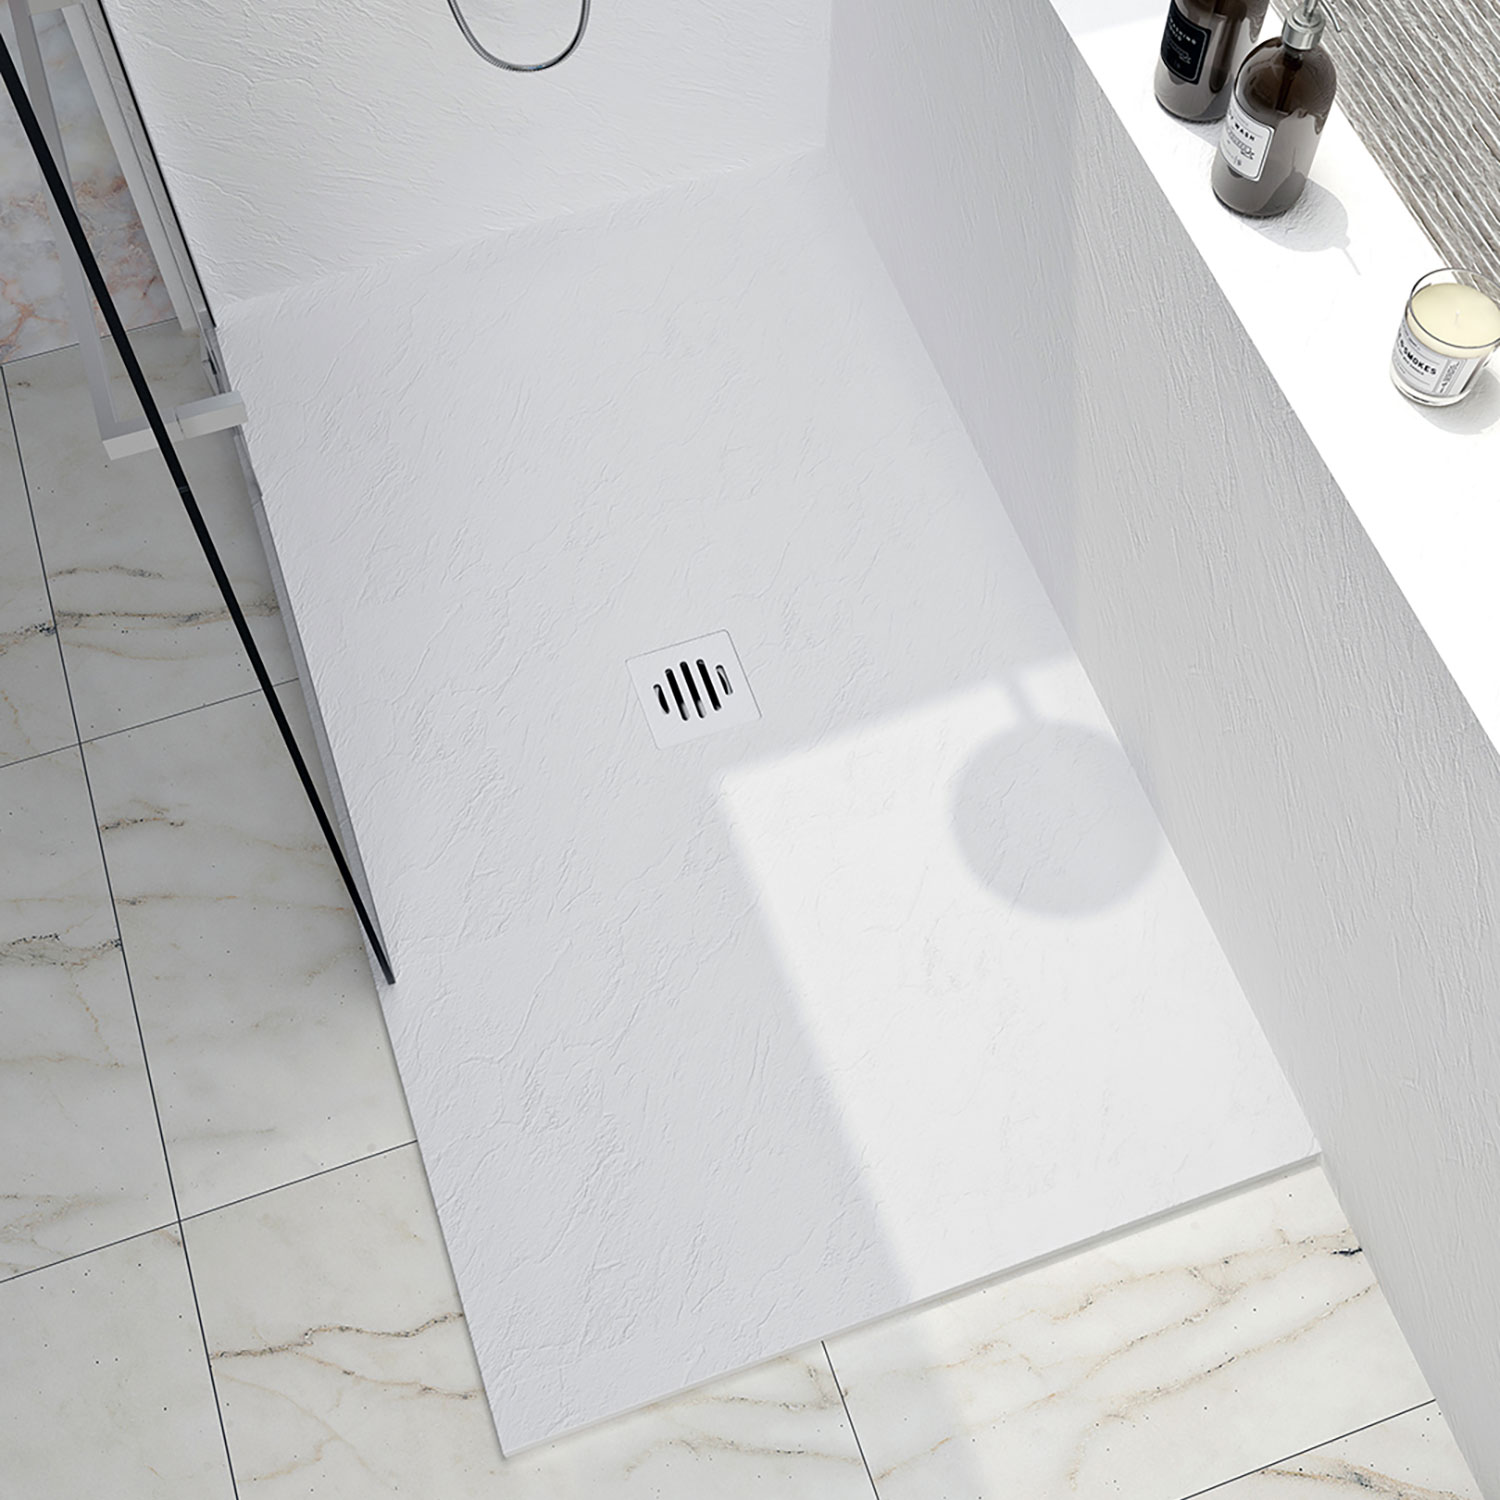 Shower base Slate 54 x 36, custom-made tile flange installation, in white